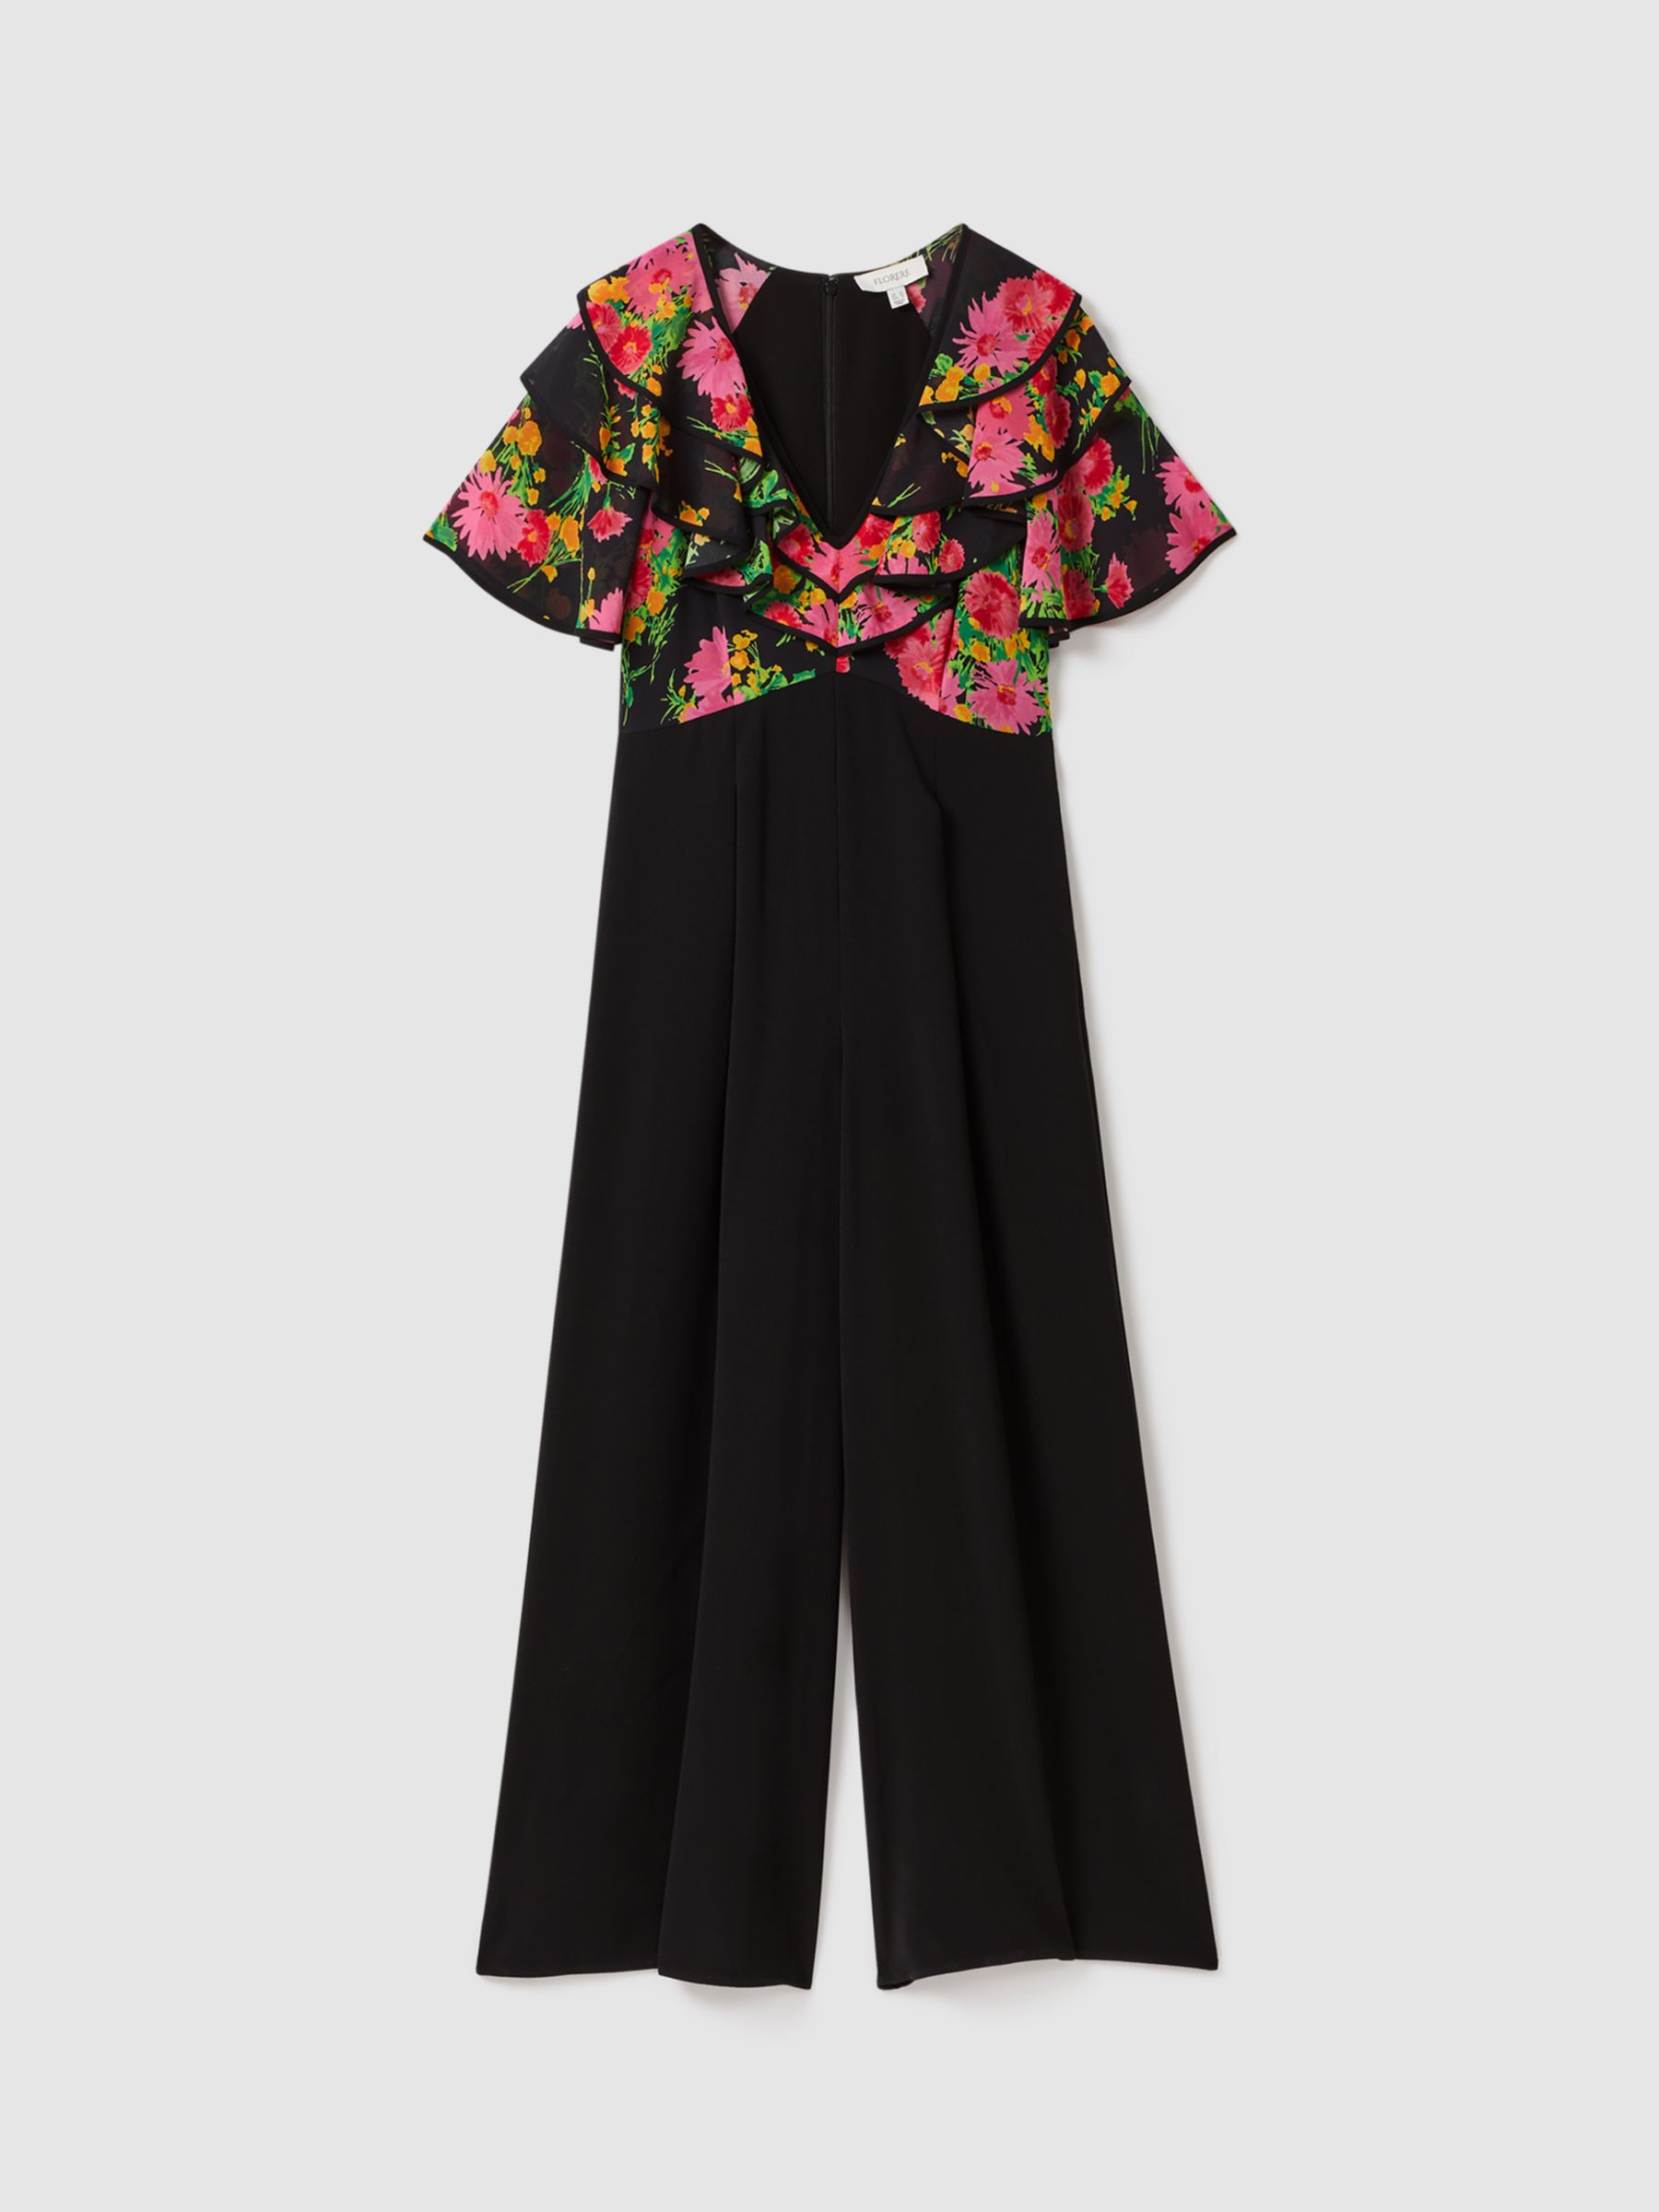 FLORERE Floral Print Ruffle Sleeve Jumpsuit, Black/Multi, 8